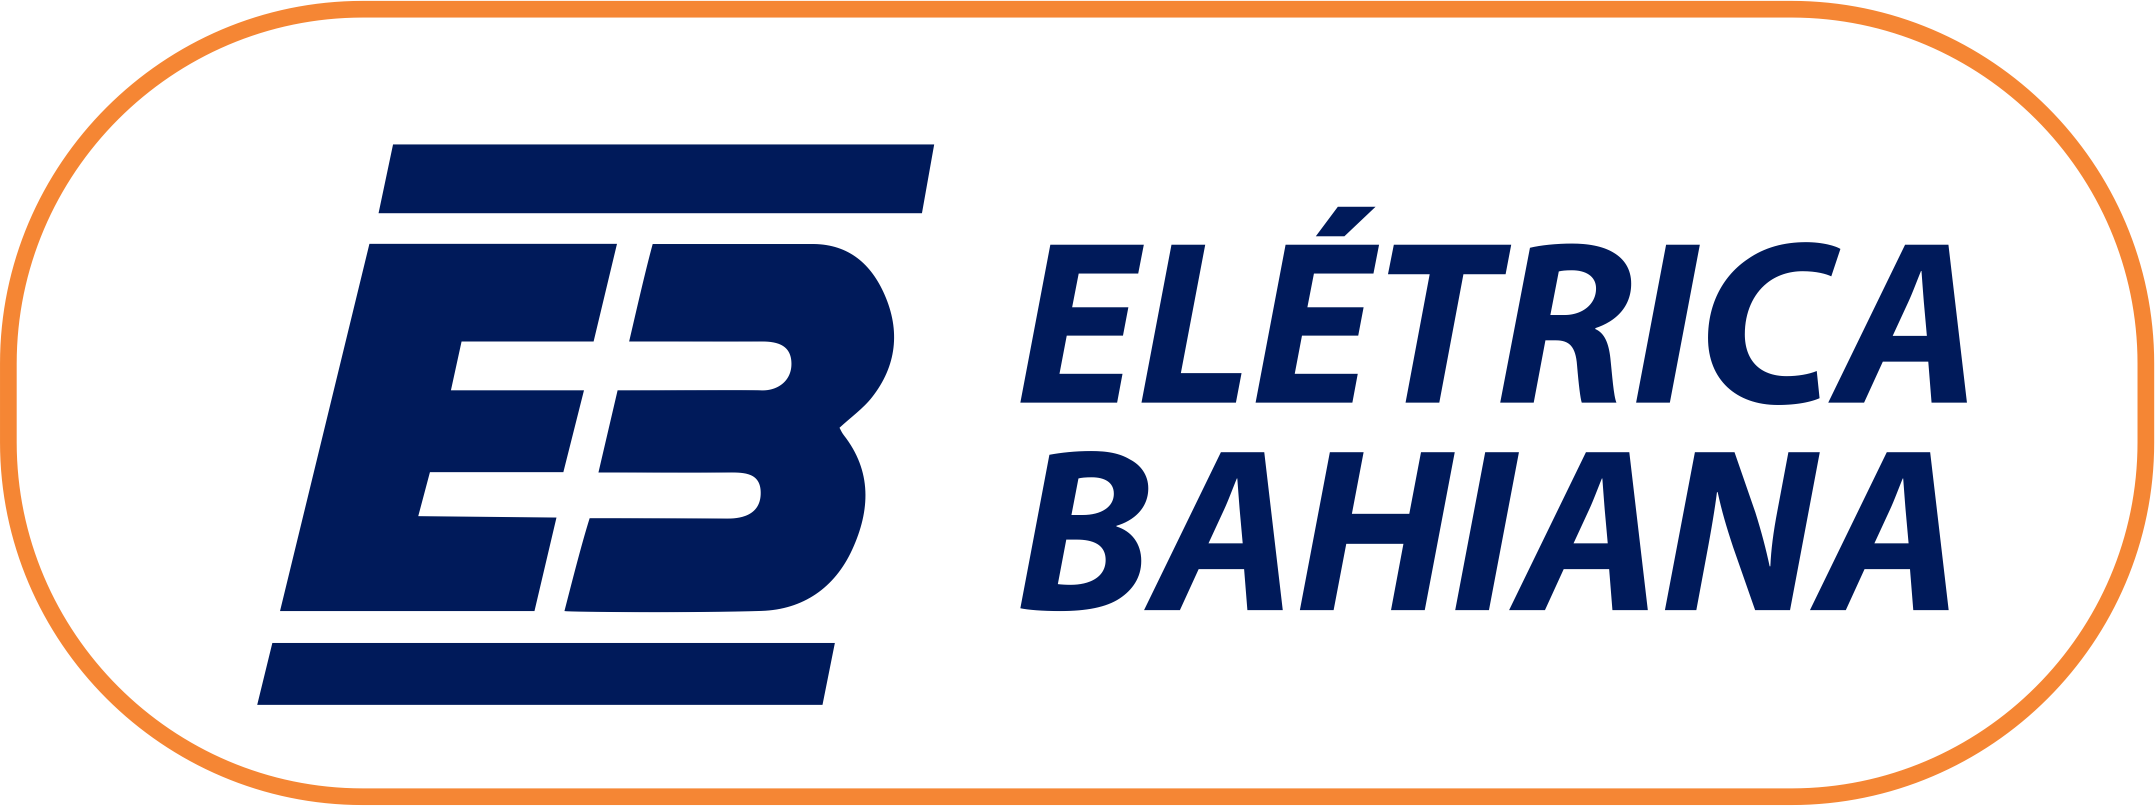 Eletrica Bahiana